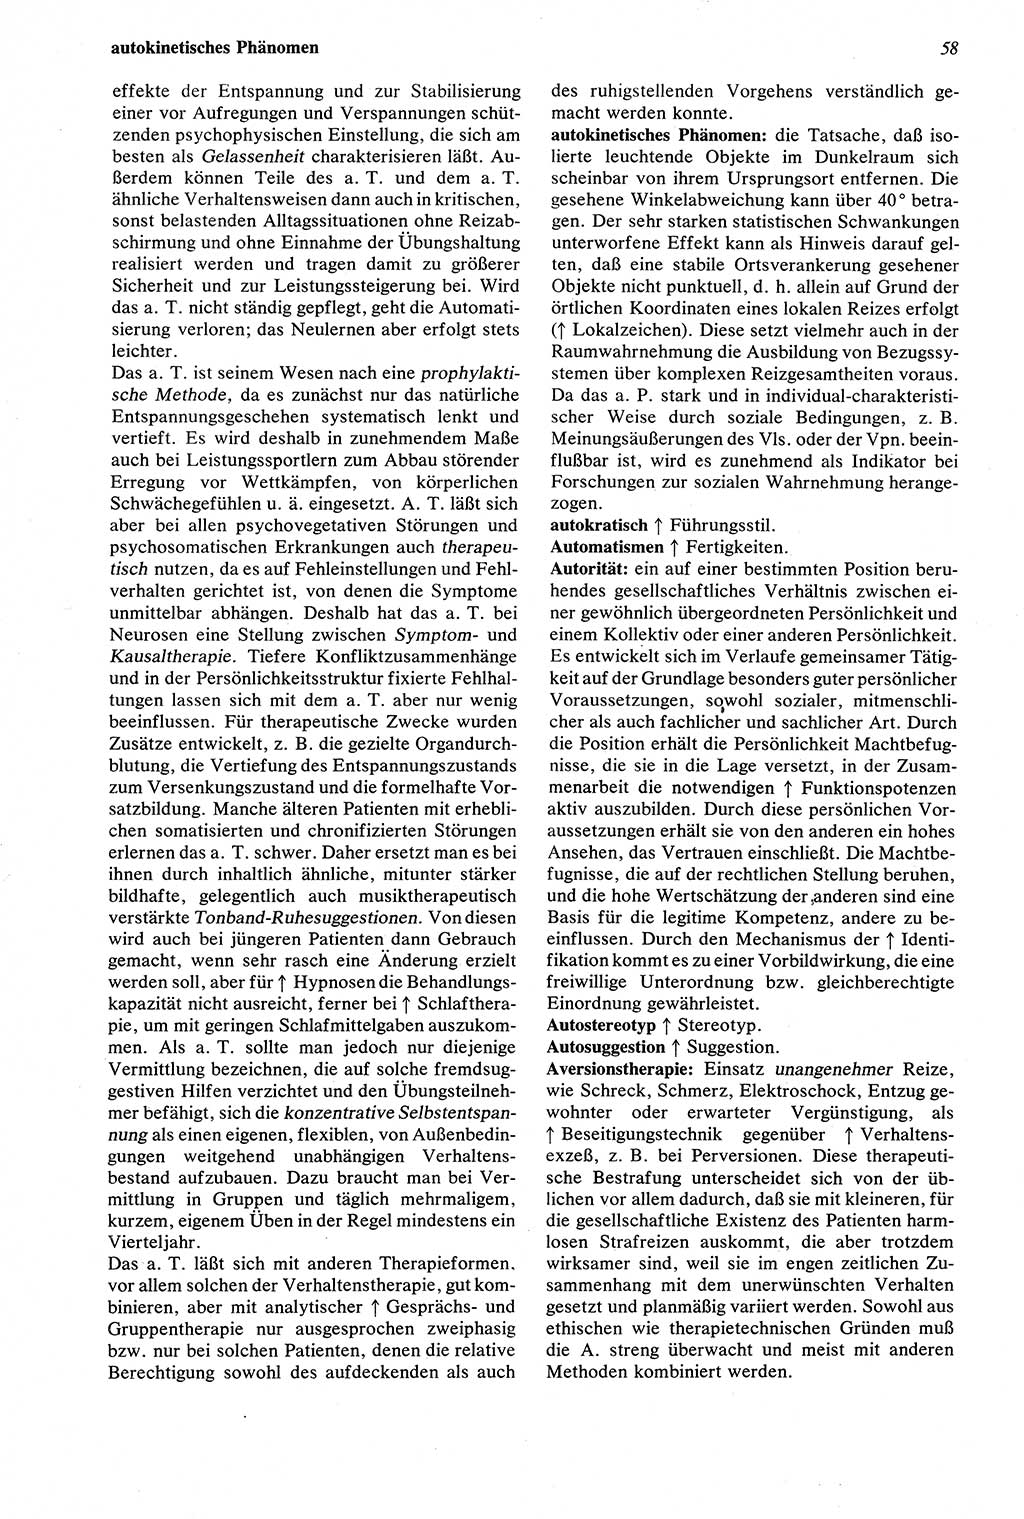 Wörterbuch der Psychologie [Deutsche Demokratische Republik (DDR)] 1976, Seite 58 (Wb. Psych. DDR 1976, S. 58)